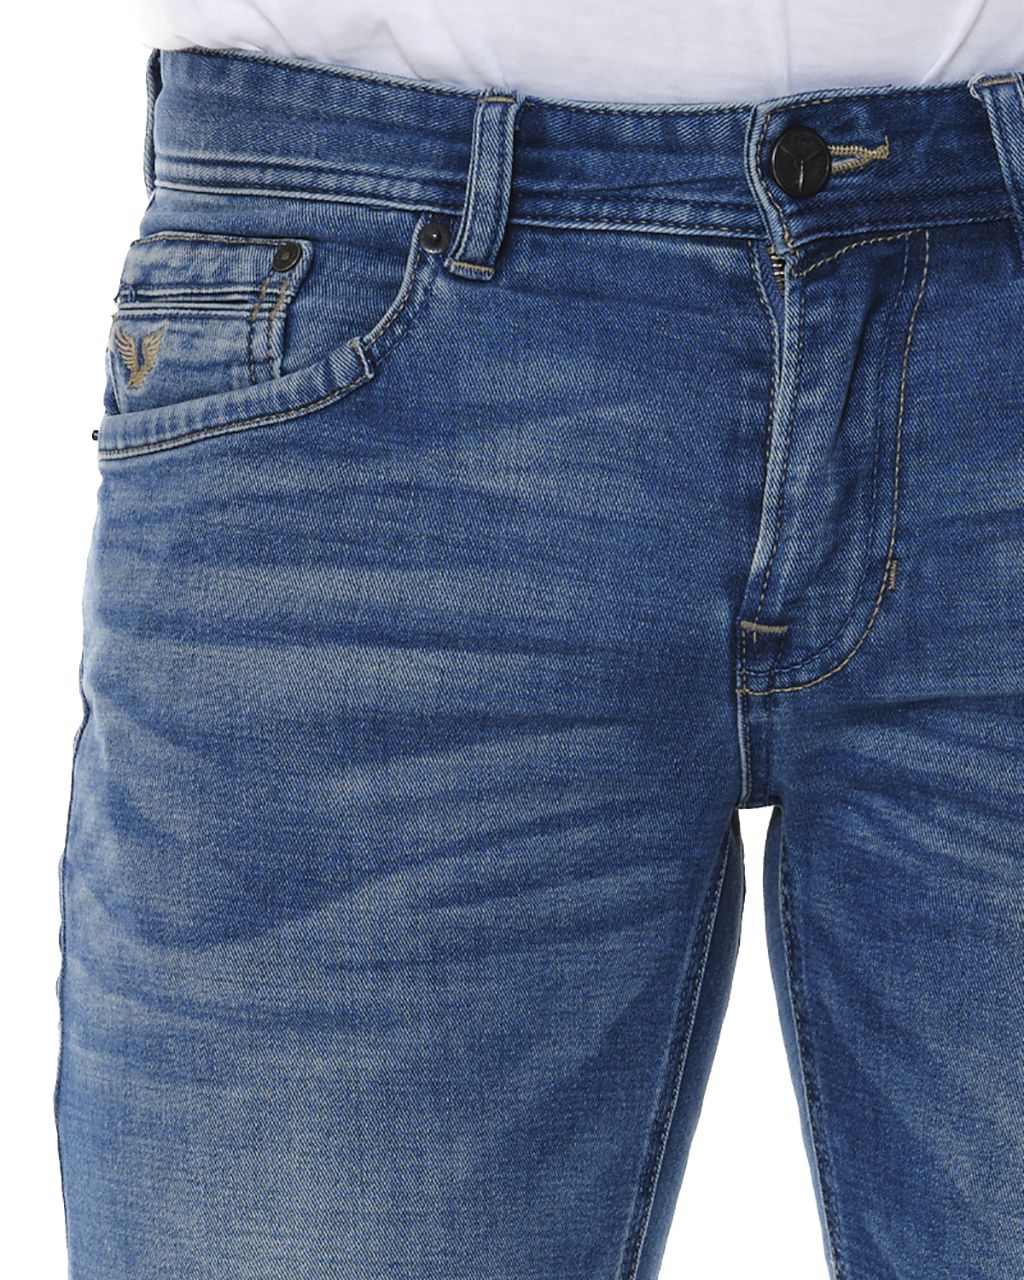 PME Legend Tailwheel Jeans  Blauw 062082-001-28/30